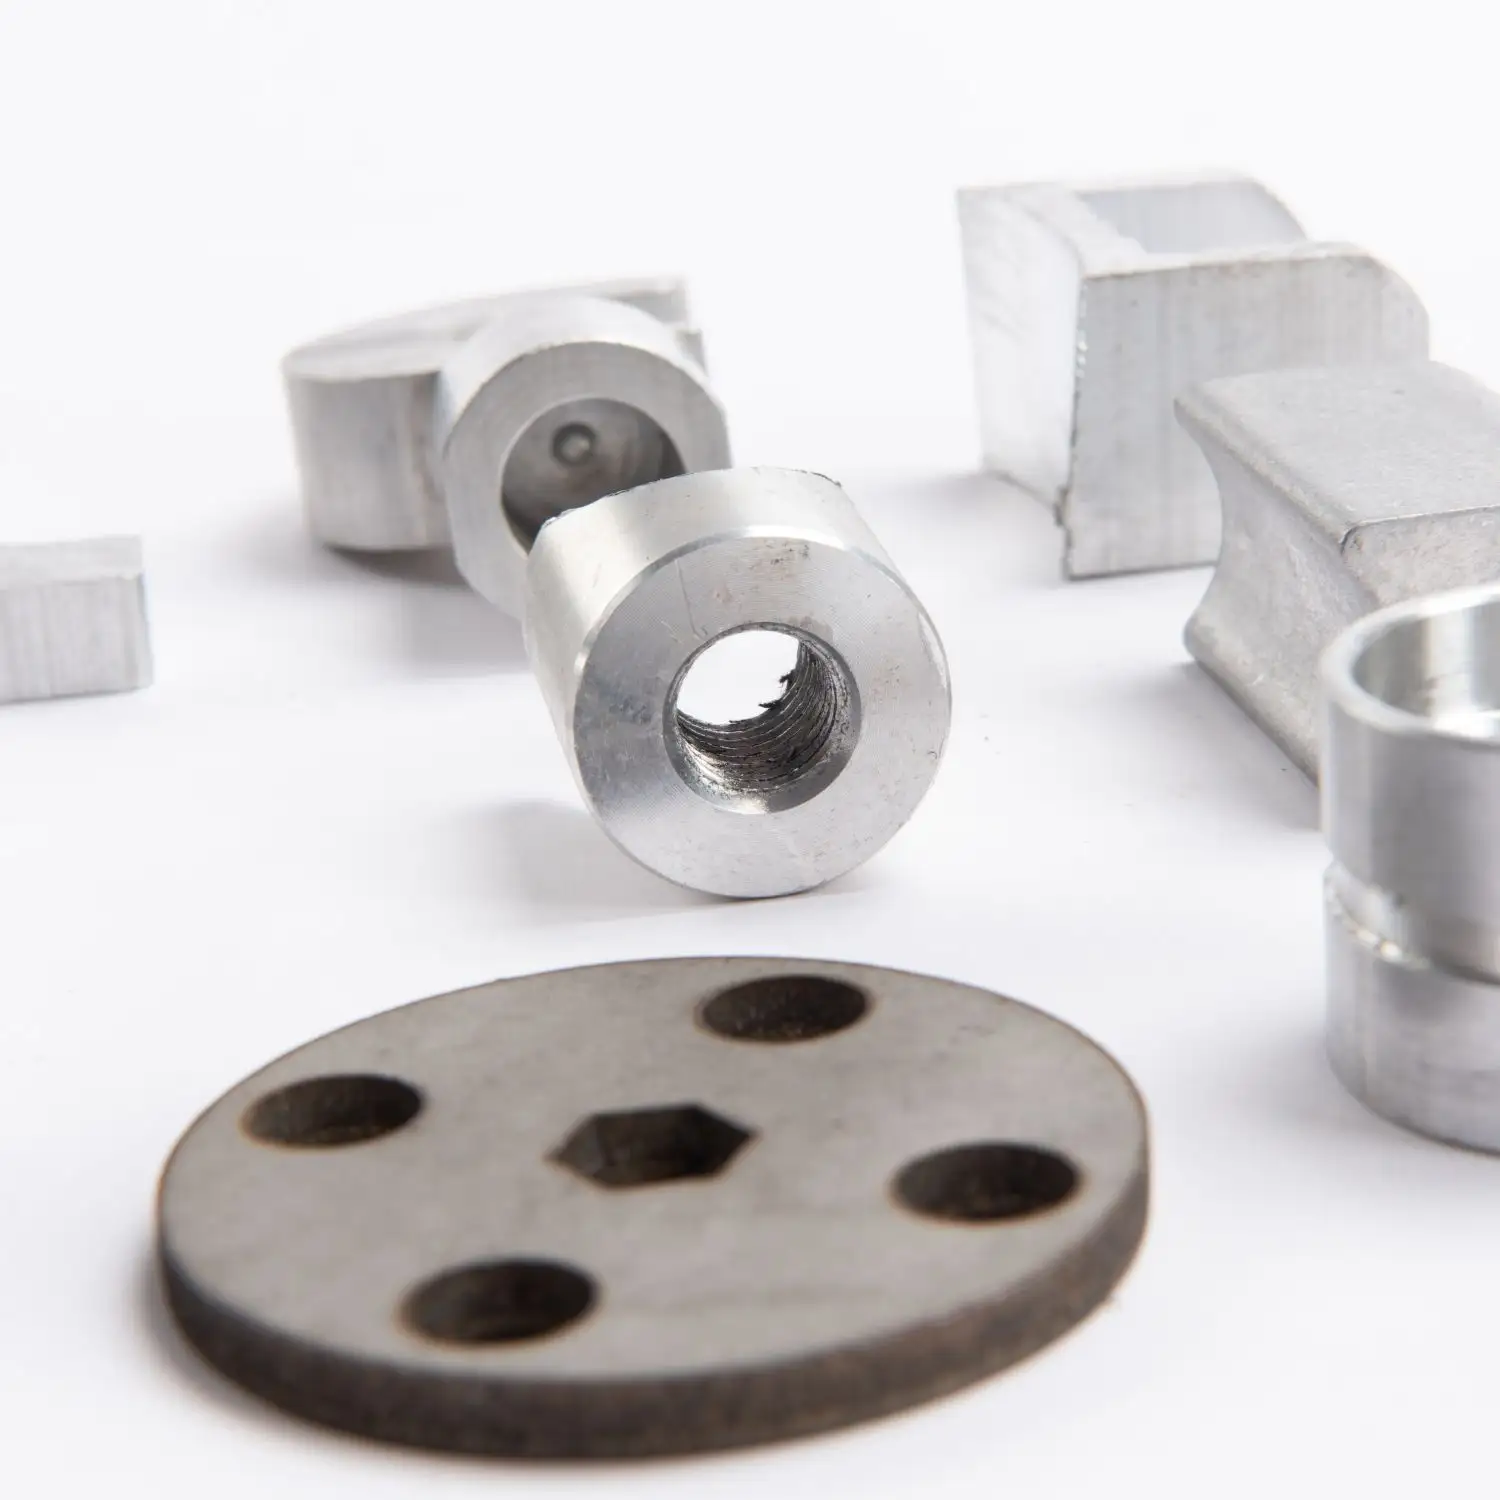 Özel paslanmaz çelik yatırım hassas döküm ve işleme metal hassas parçalar